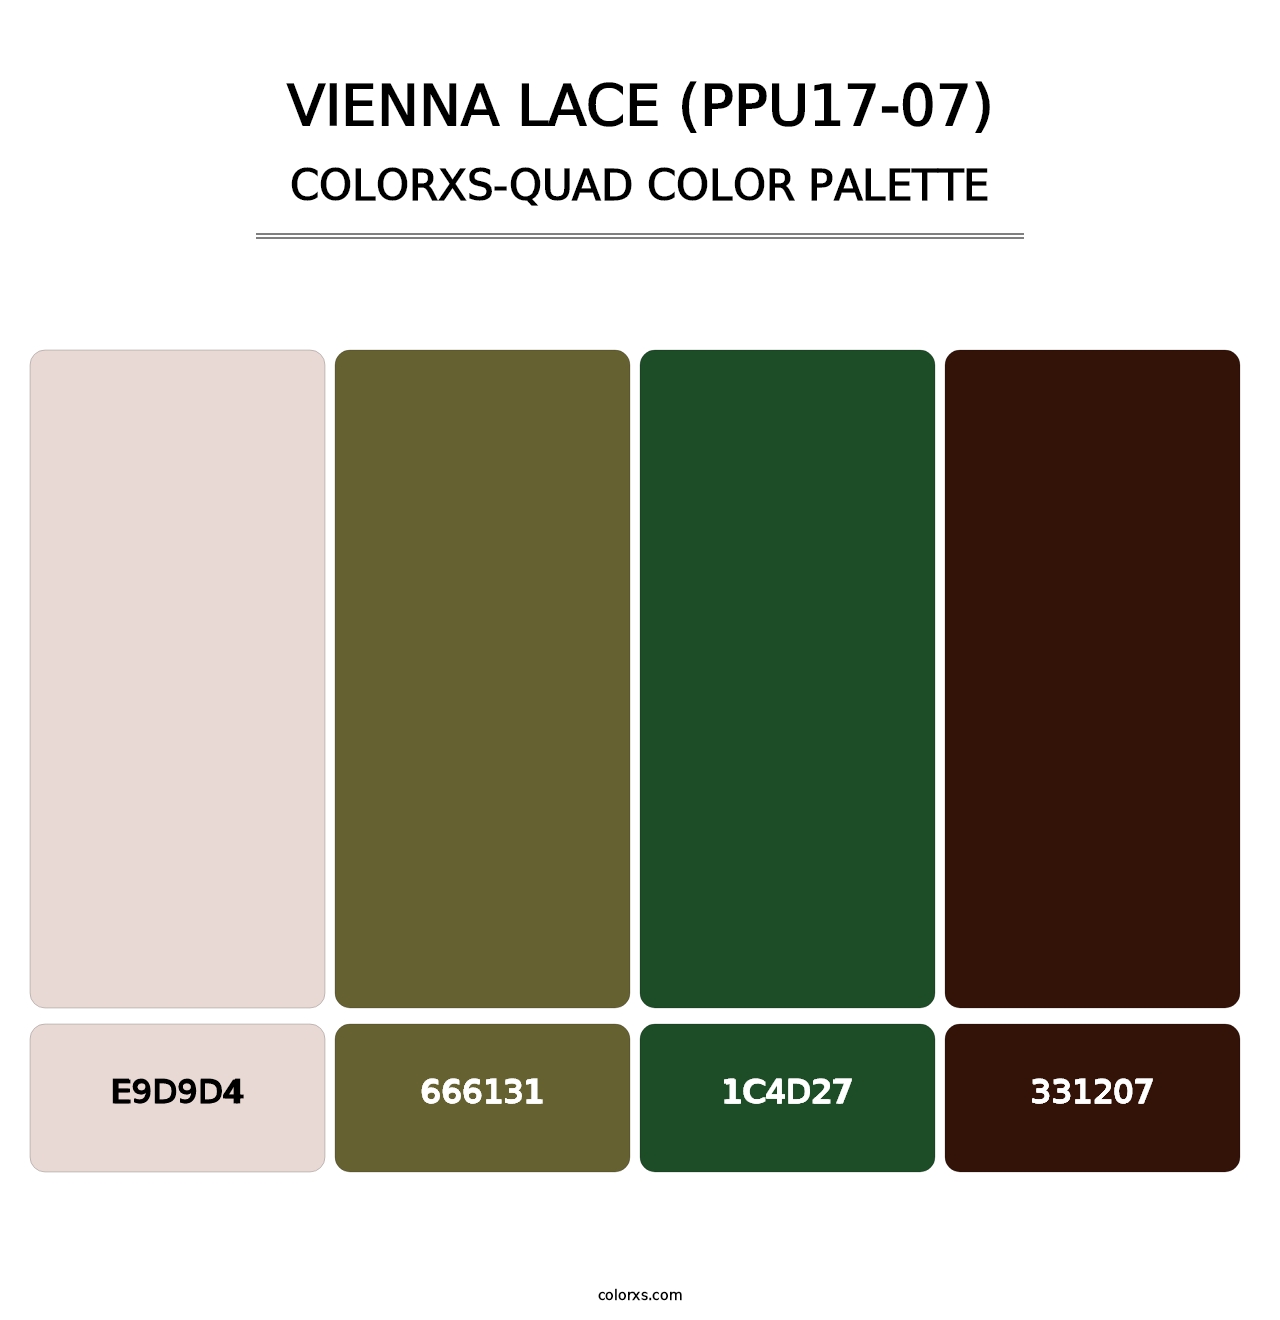 Vienna Lace (PPU17-07) - Colorxs Quad Palette